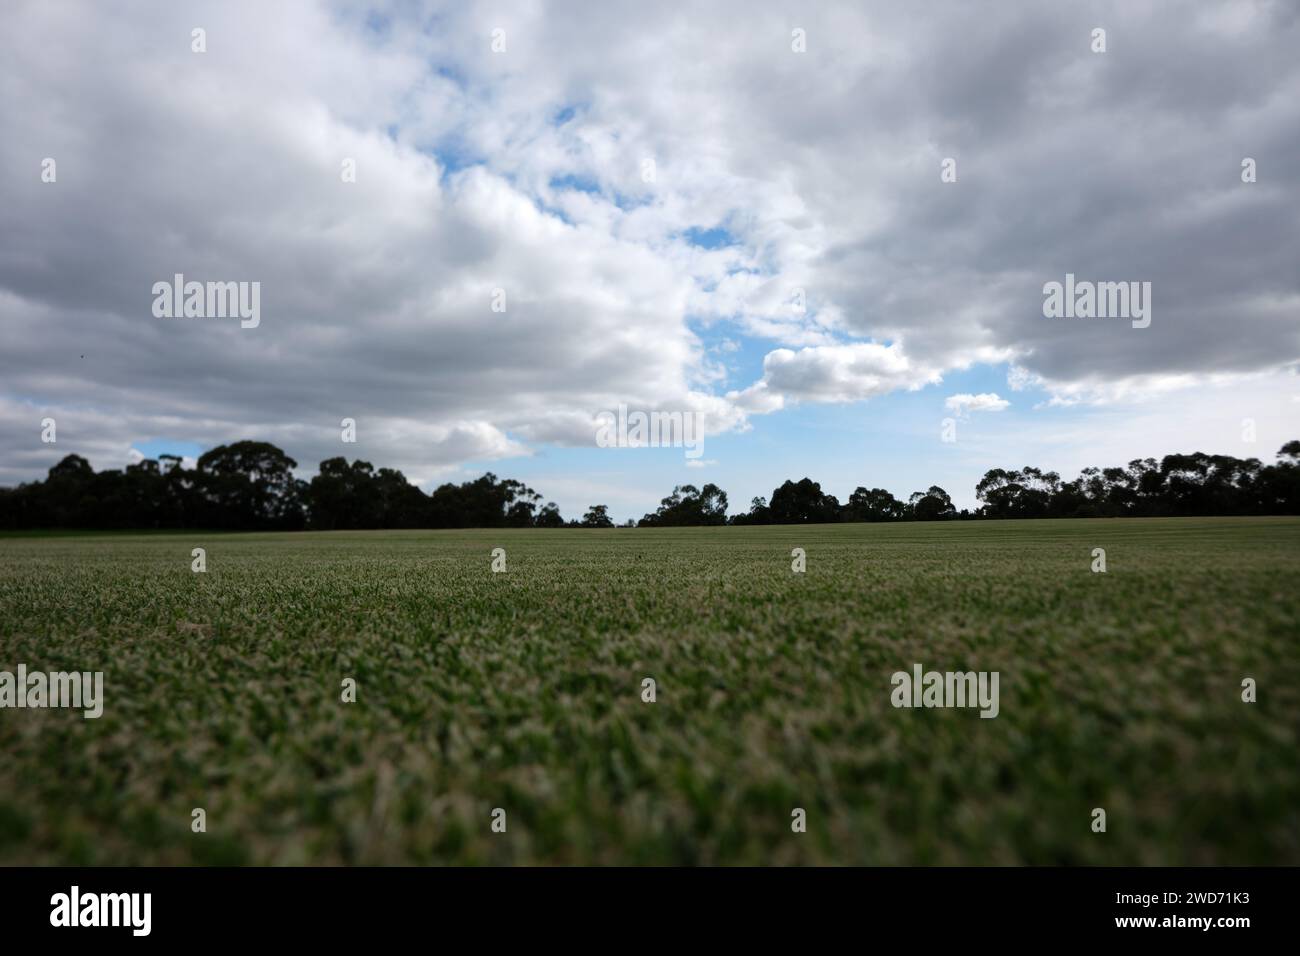 Campo deportivo cubierto de hierba desde abajo con árboles y nubes en el cielo en la distancia Foto de stock